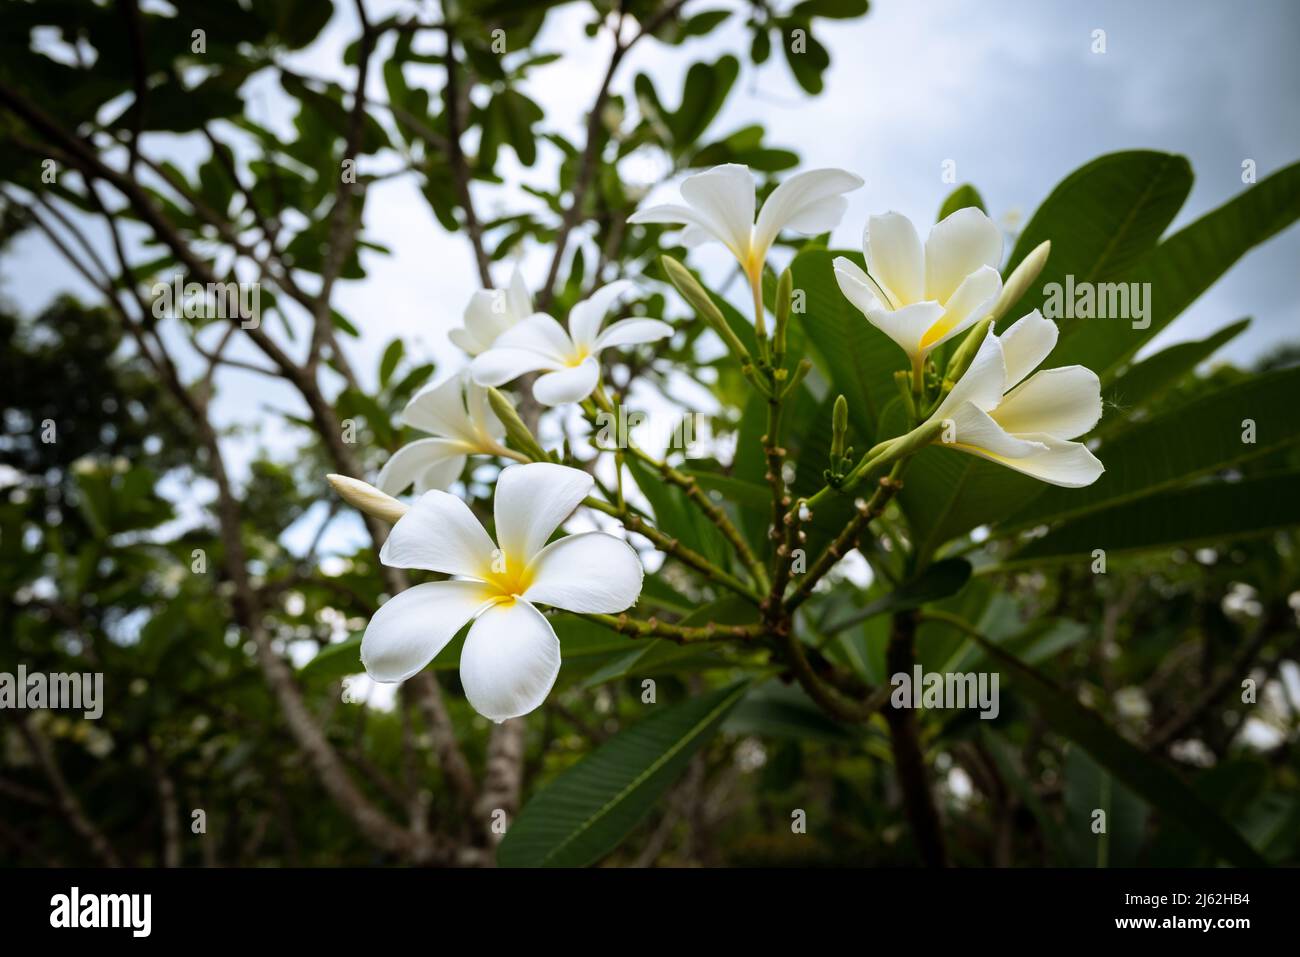 Plumeria est des arbres endémiques du Mexique et de la Thaïlande et la fleur nationale du Laos. Arbre blanc de Temple avec fond vert de feuille dans le jardin. Banque D'Images